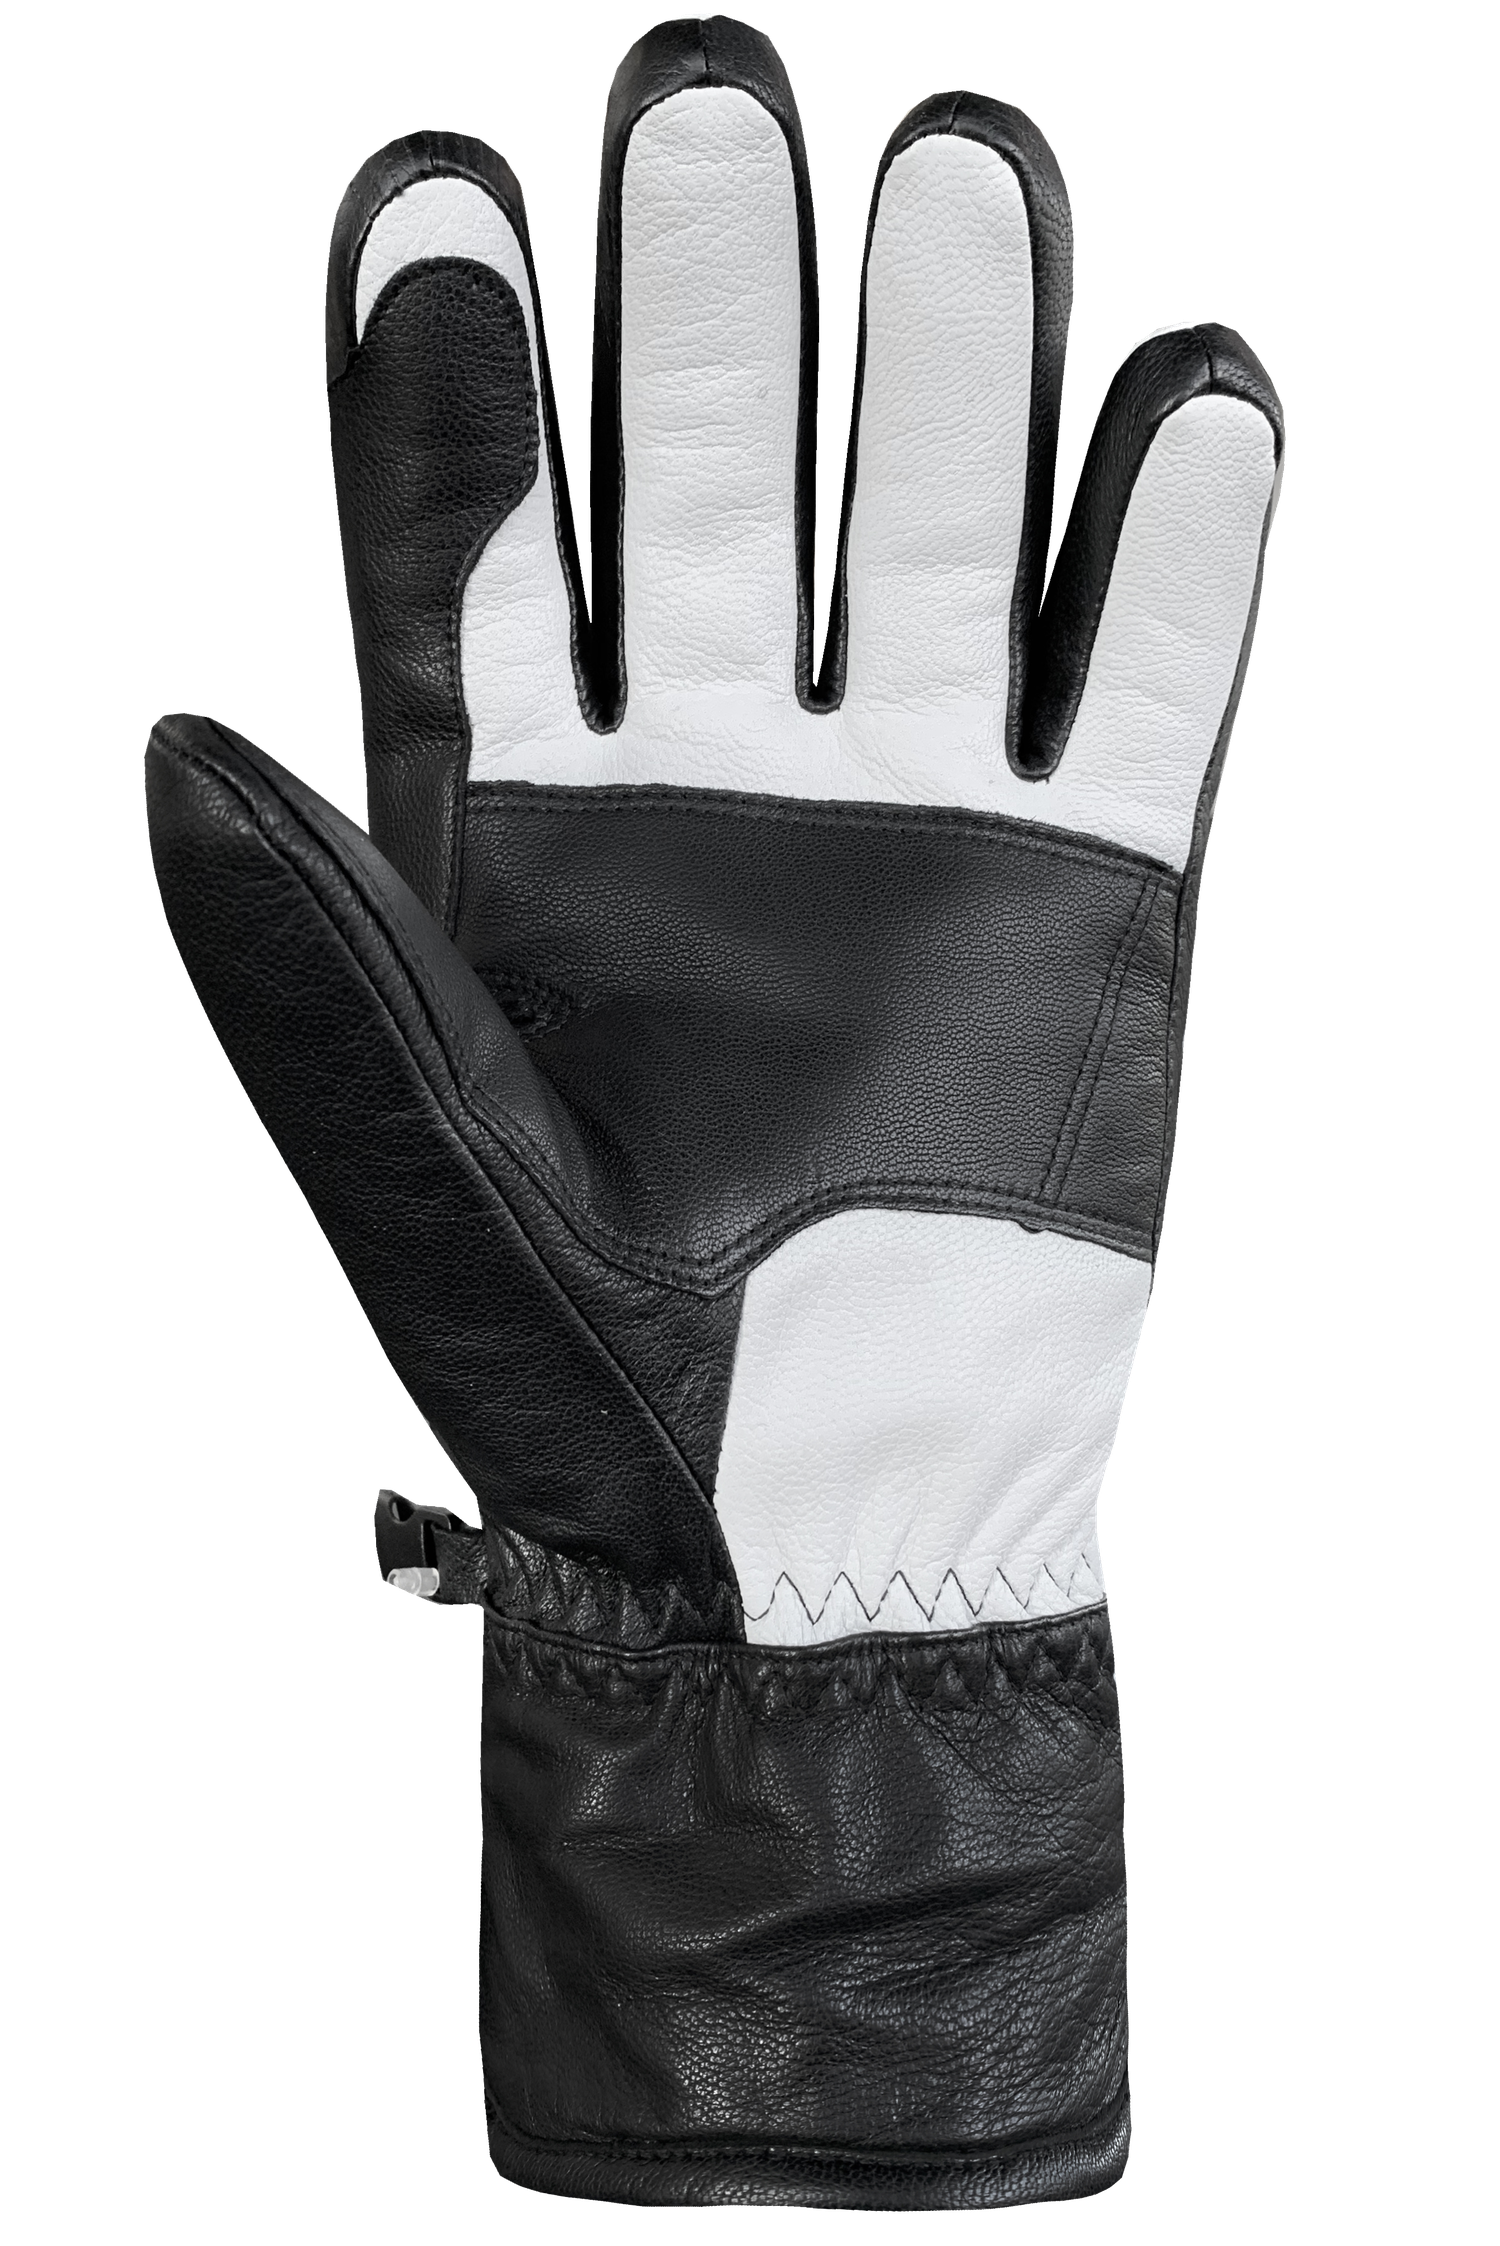 Son Of T 3 Gloves - Adult, White/Black